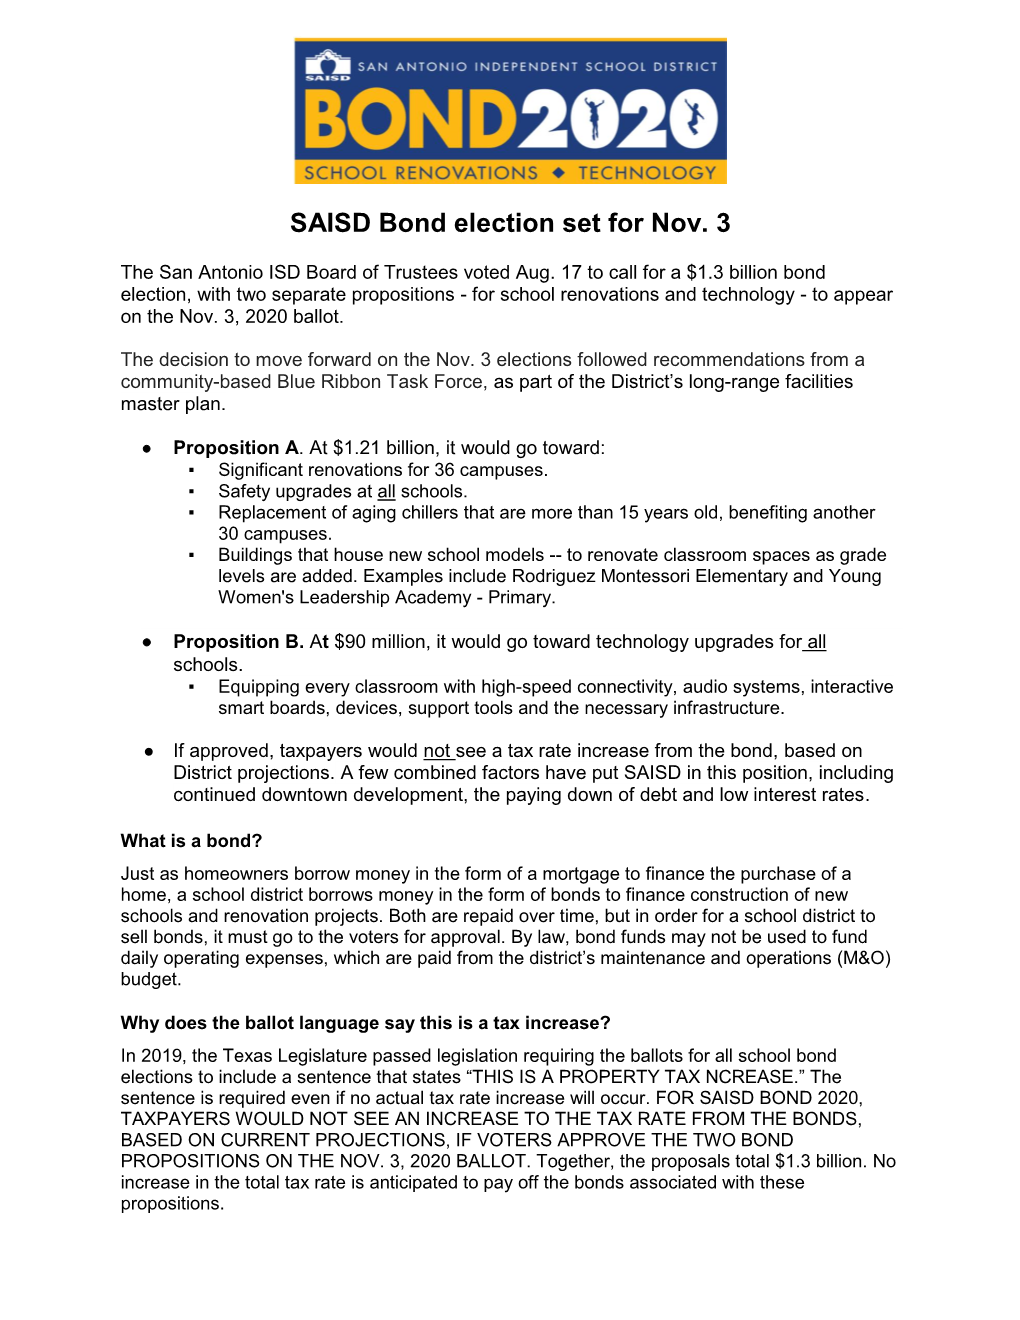 SAISD Bond Election Set for Nov. 3